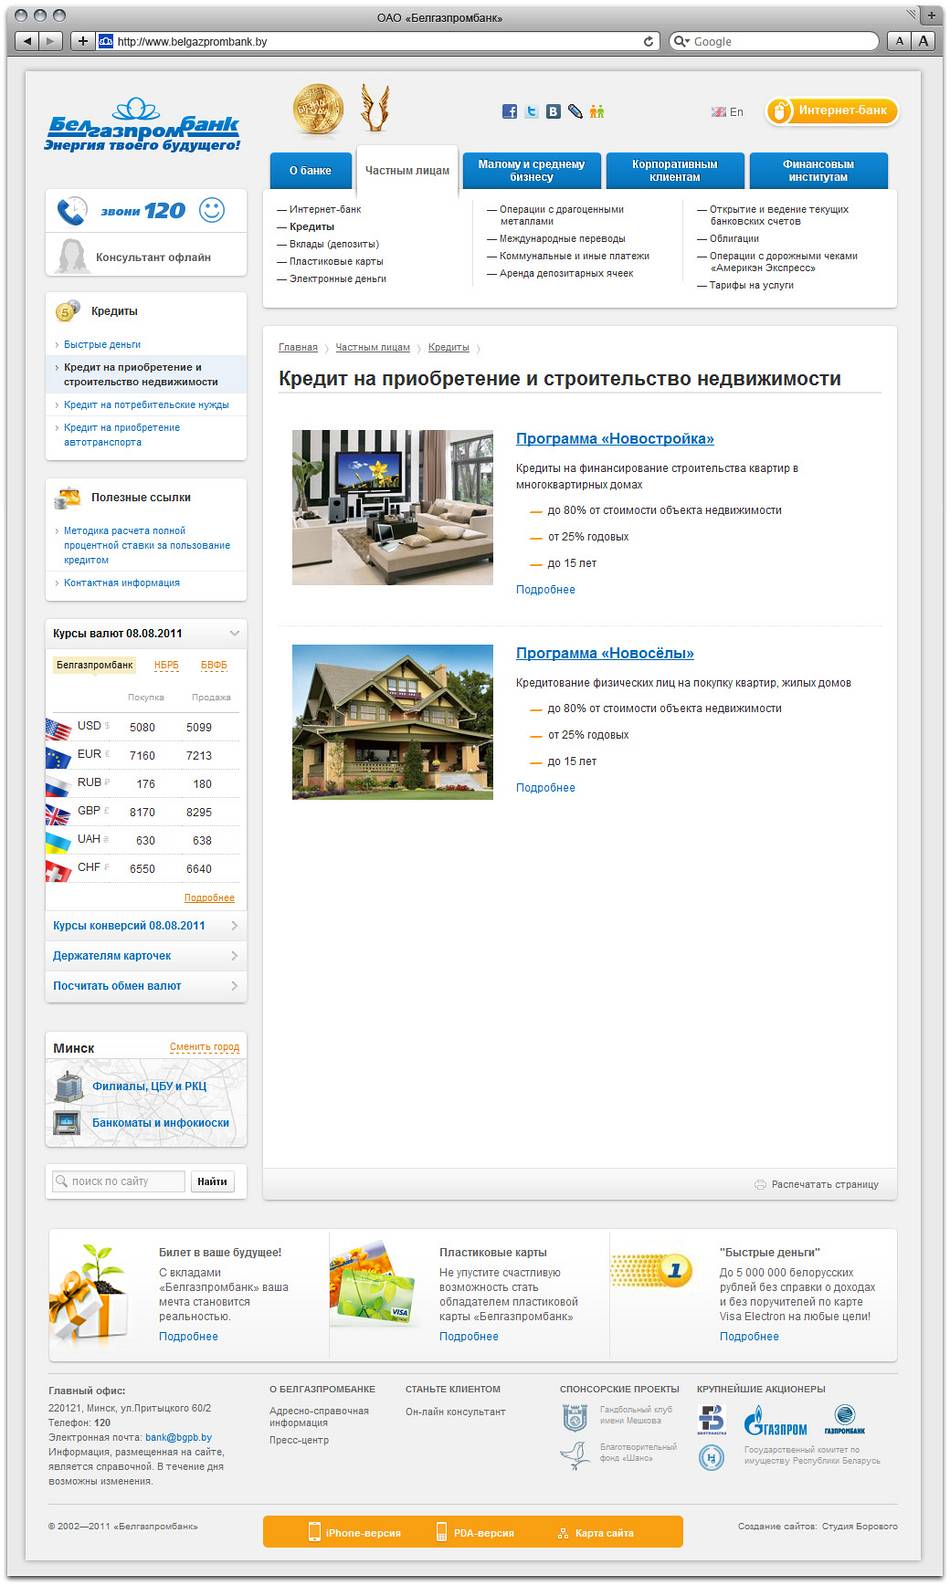 Условия кредитов на строительство и покупку жилья, квартиры в белгазпромбанке